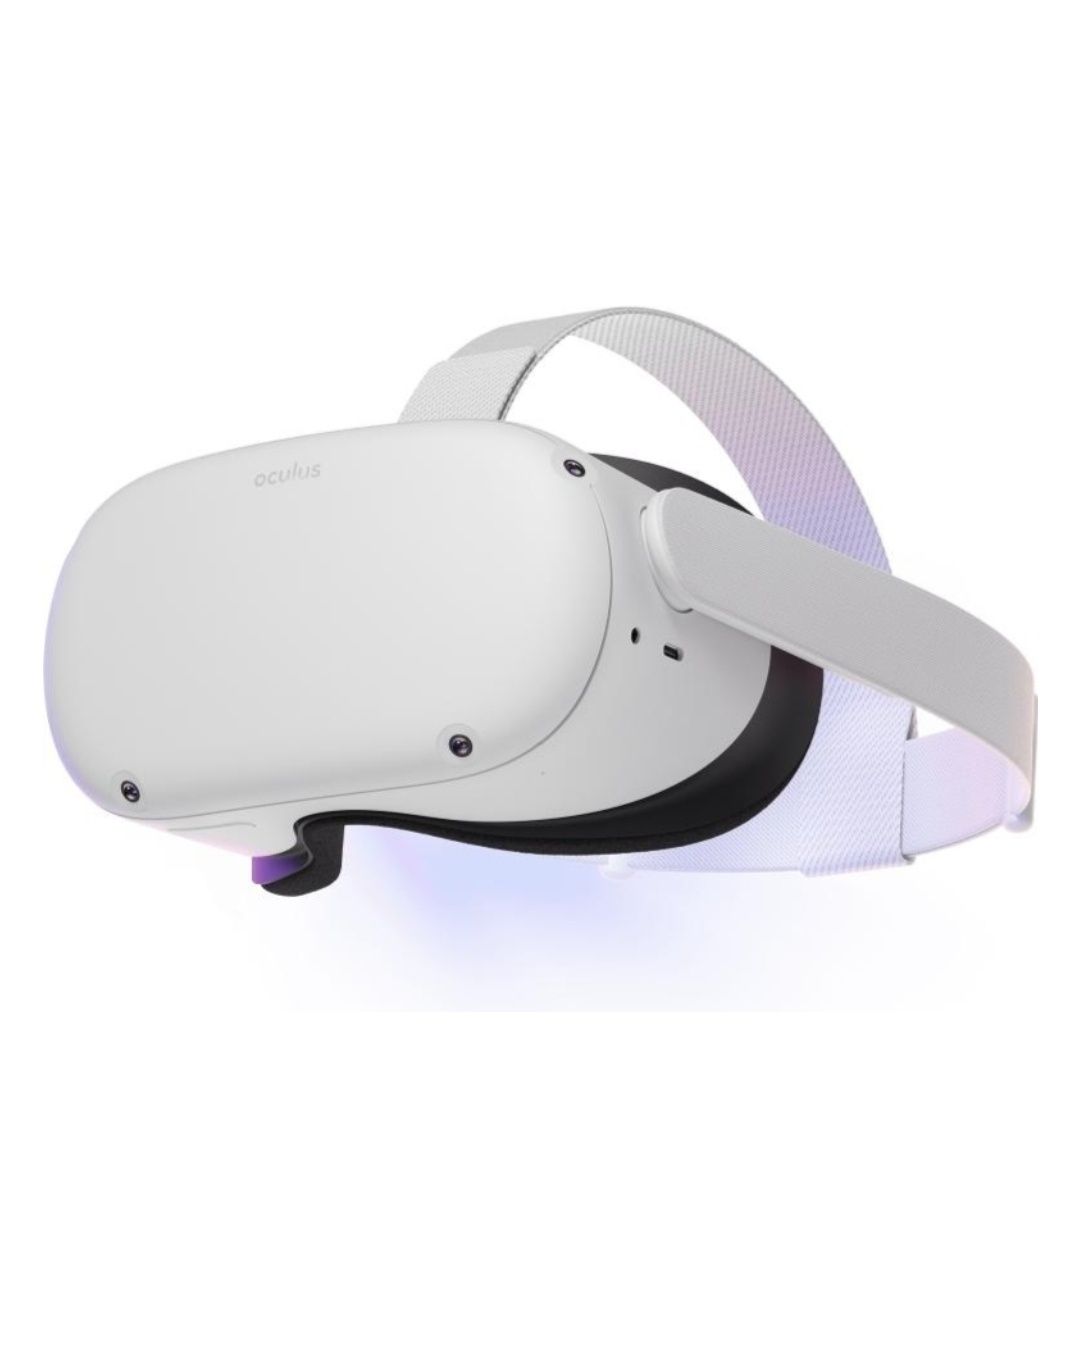 Продам новые очки виртуальной реальности Oculus Quest 2